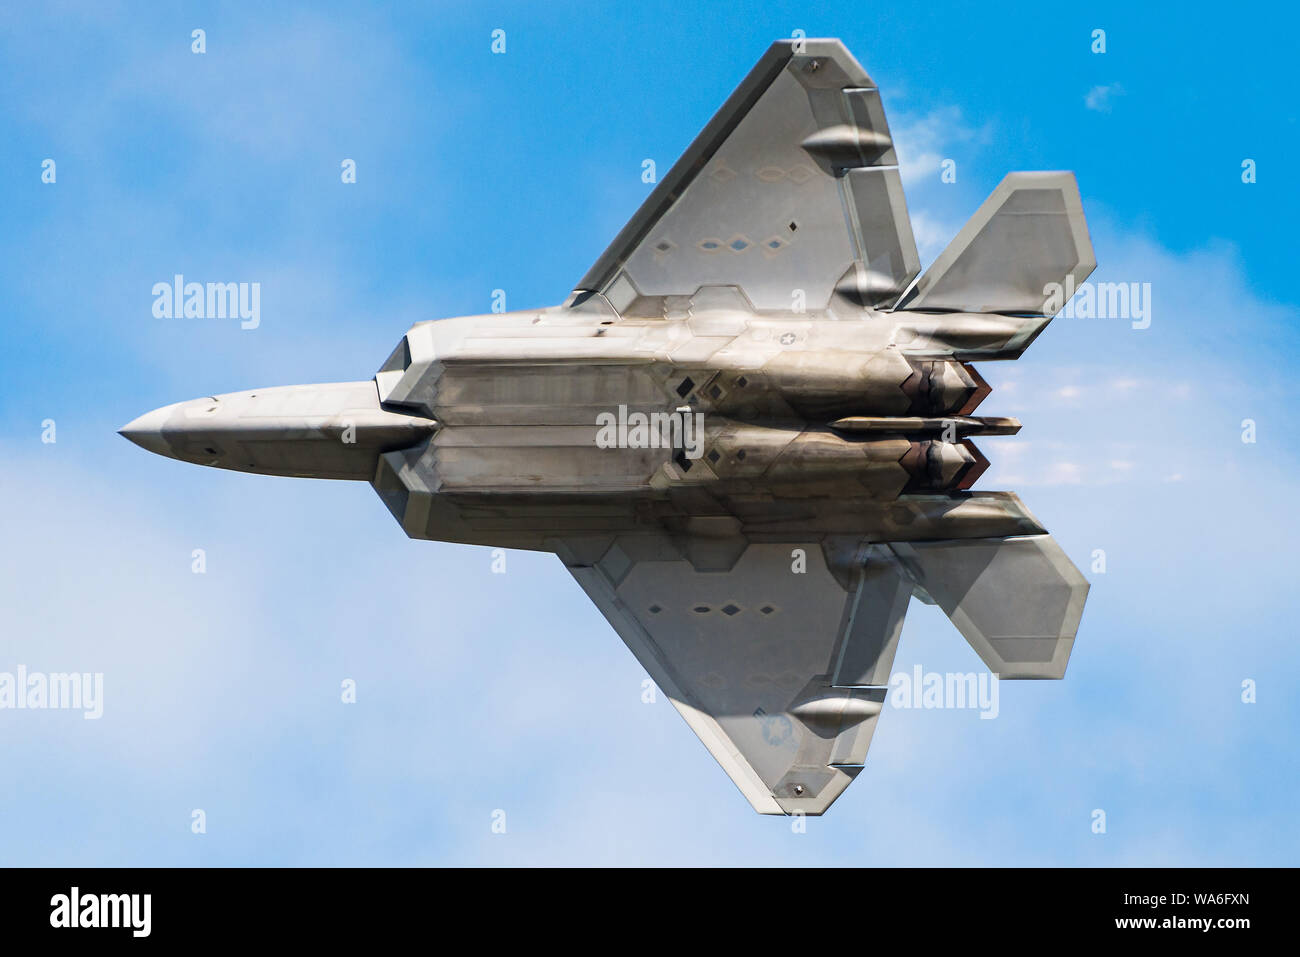 Eine Lockheed Martin F-22 Raptor fünfte Generation Stealth Fighter Jet der  United States Air Force Stockfotografie - Alamy